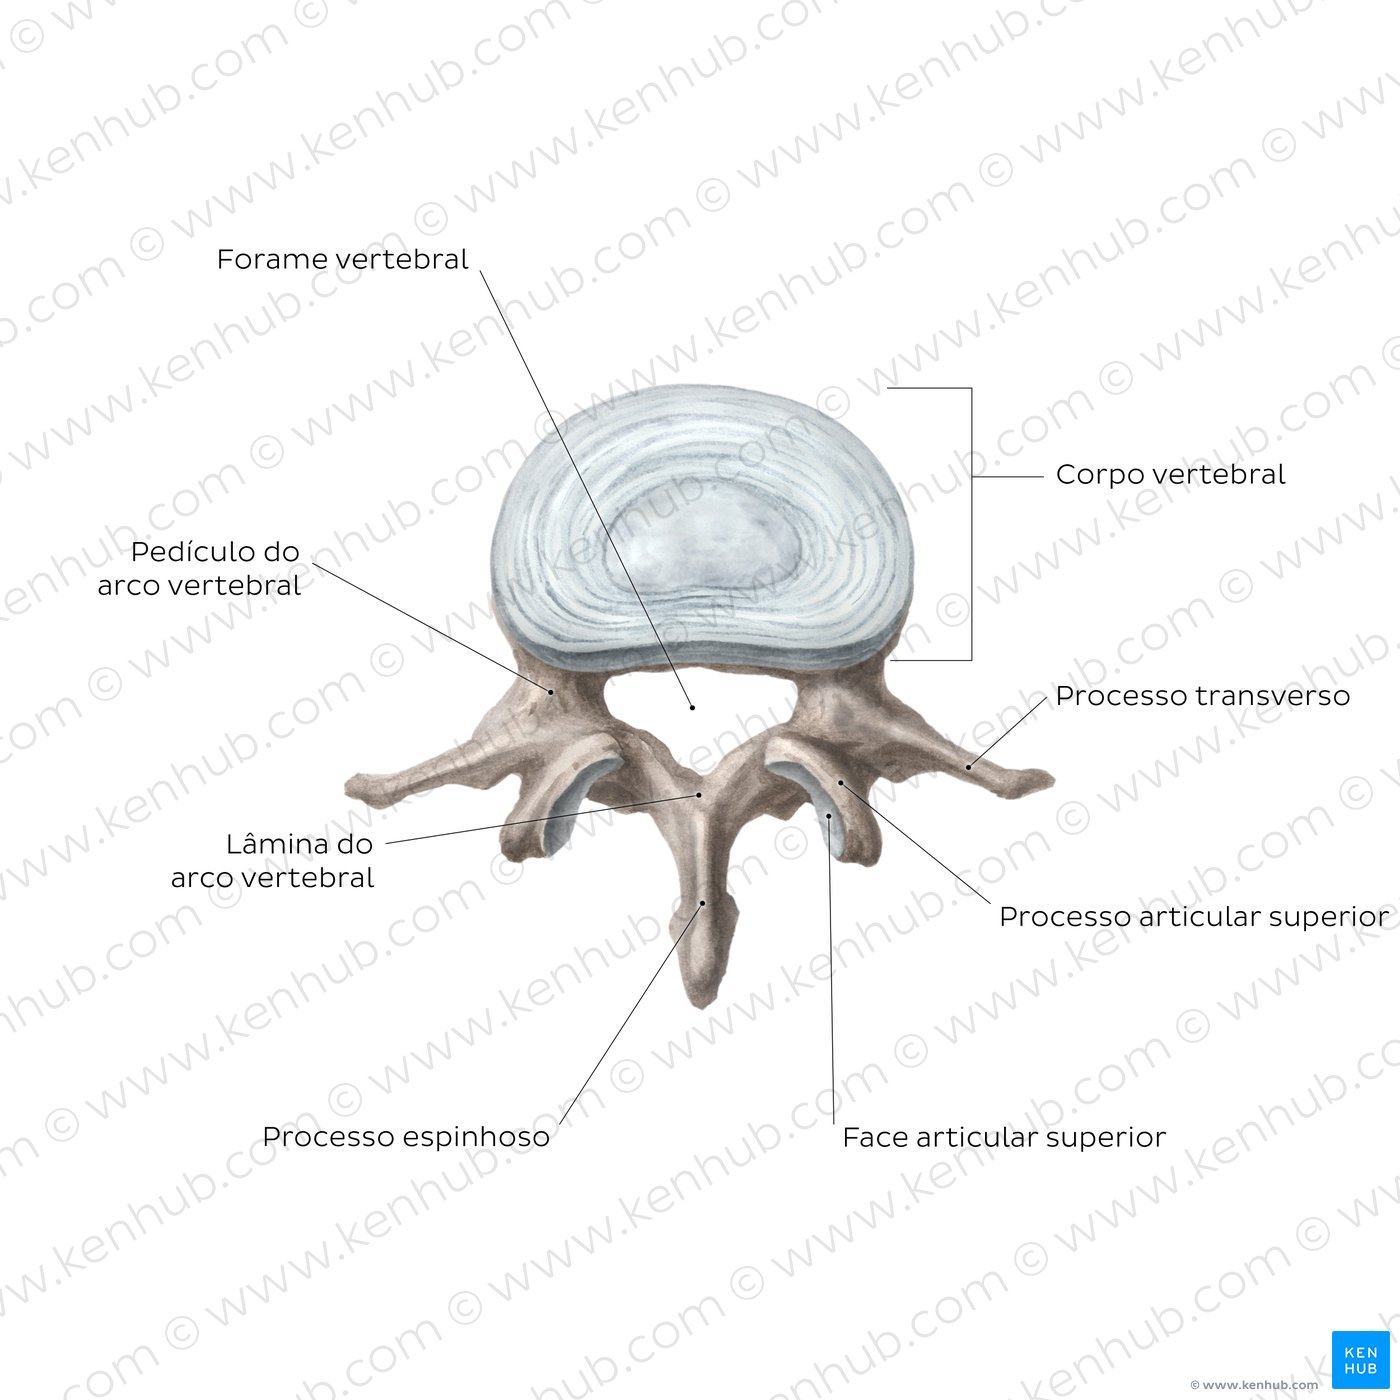 Anatomia de uma vértebra típica